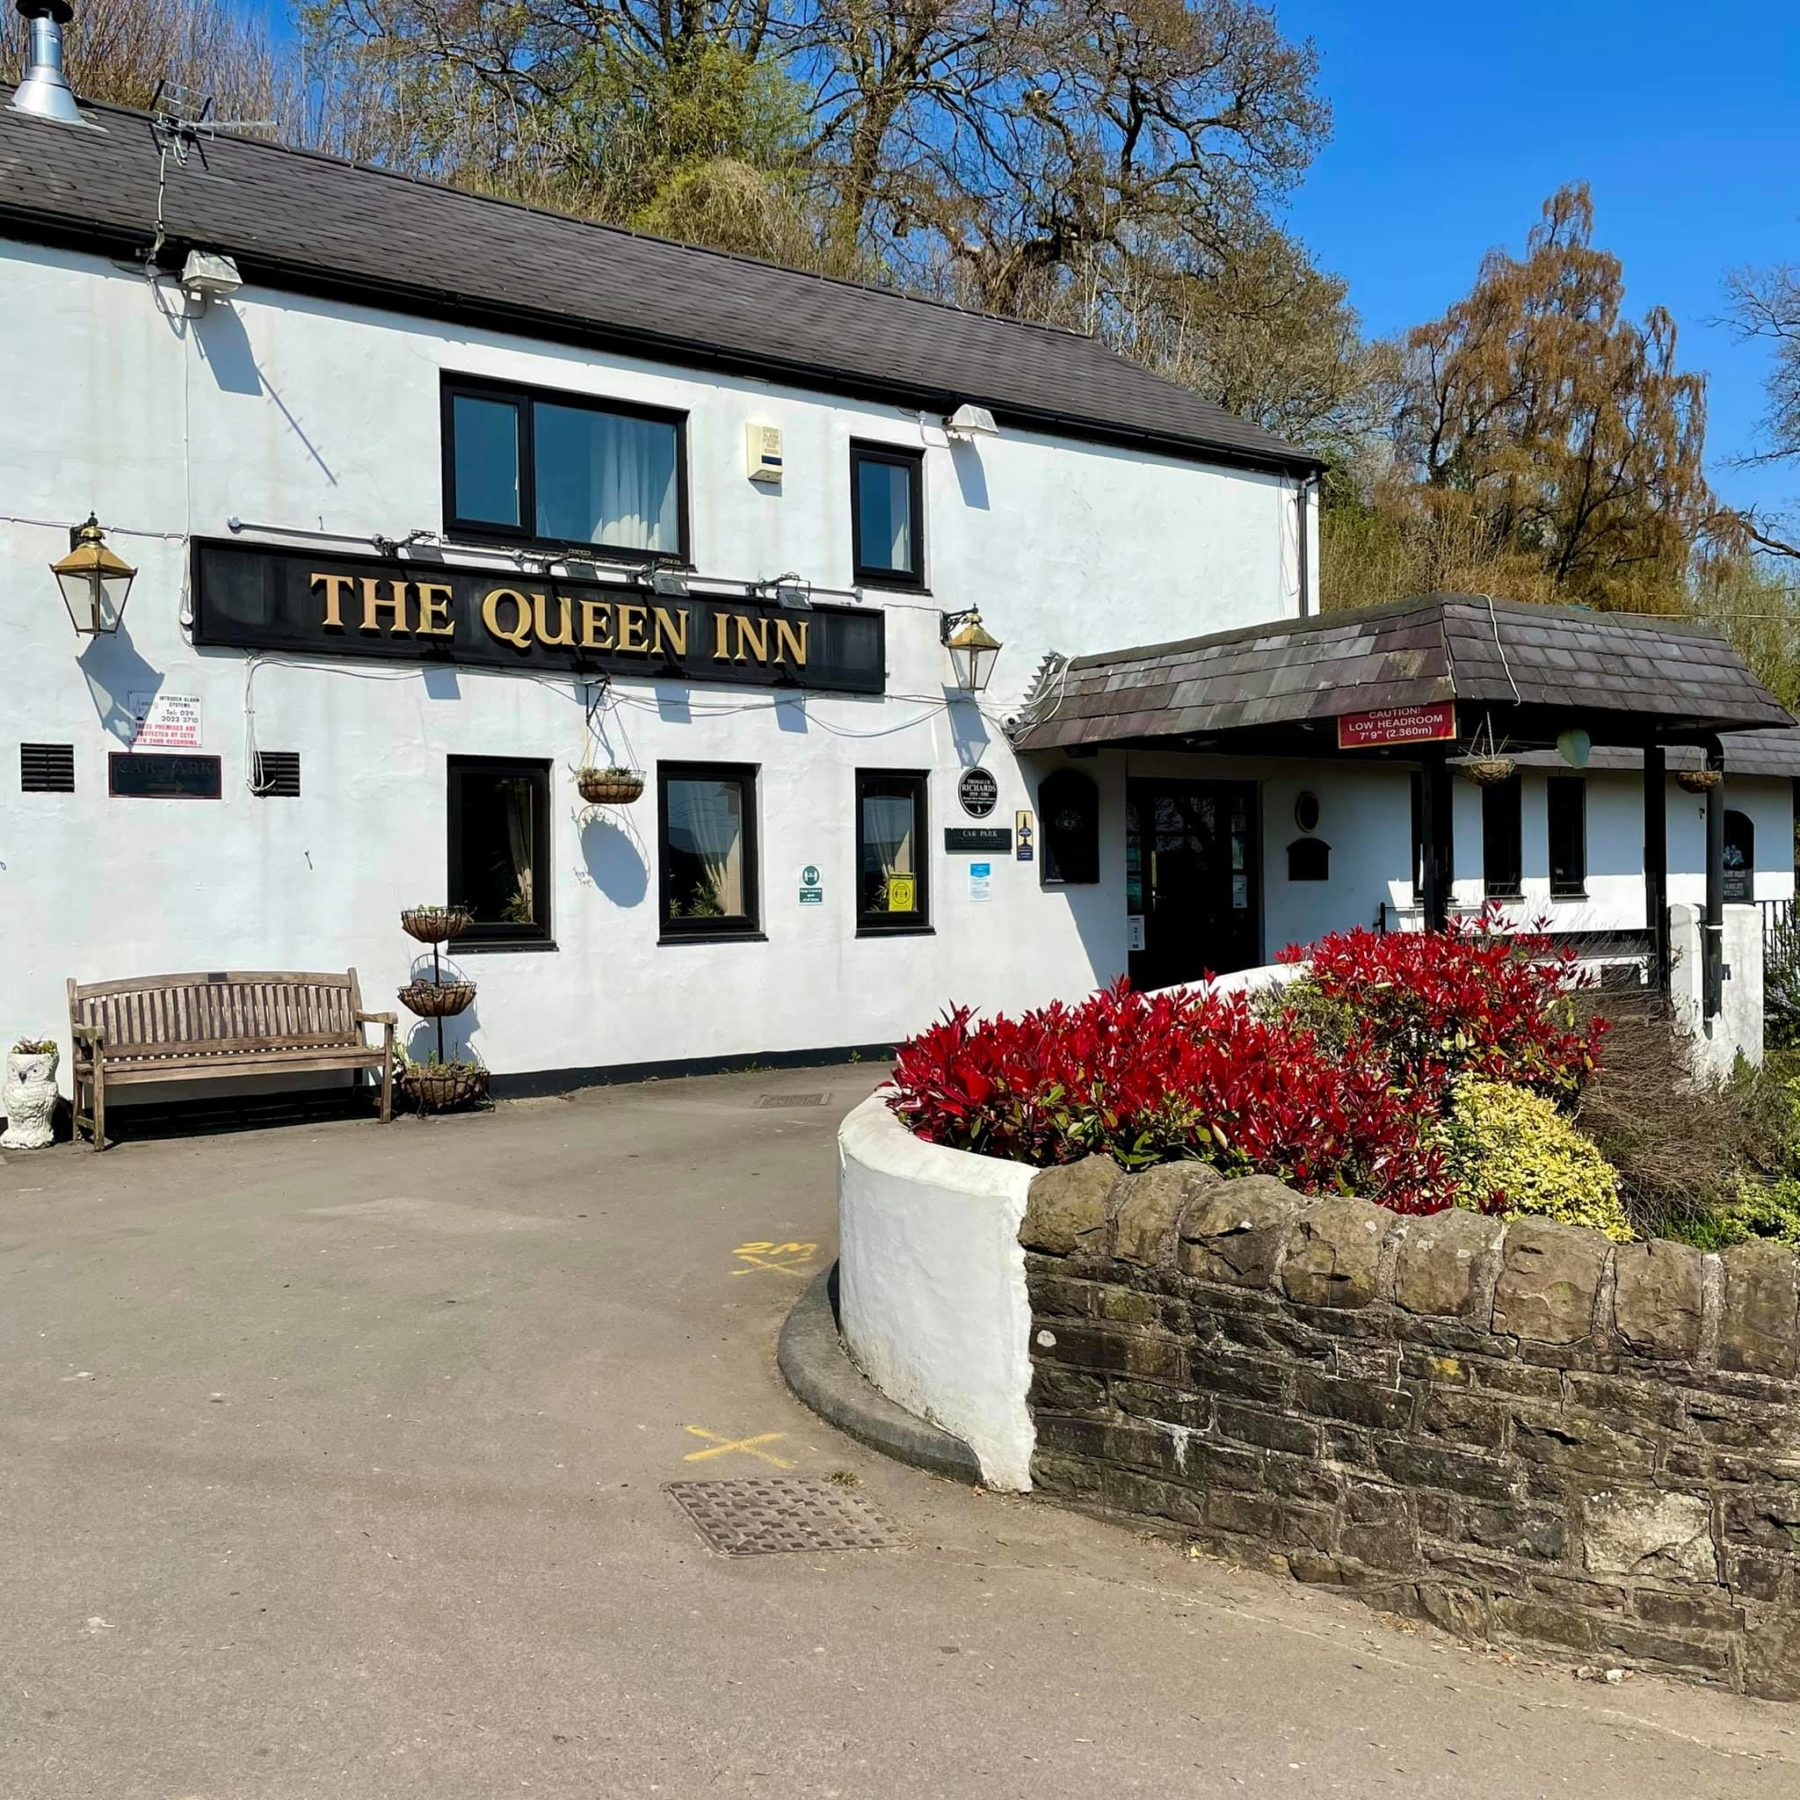 The Queen Inn pub